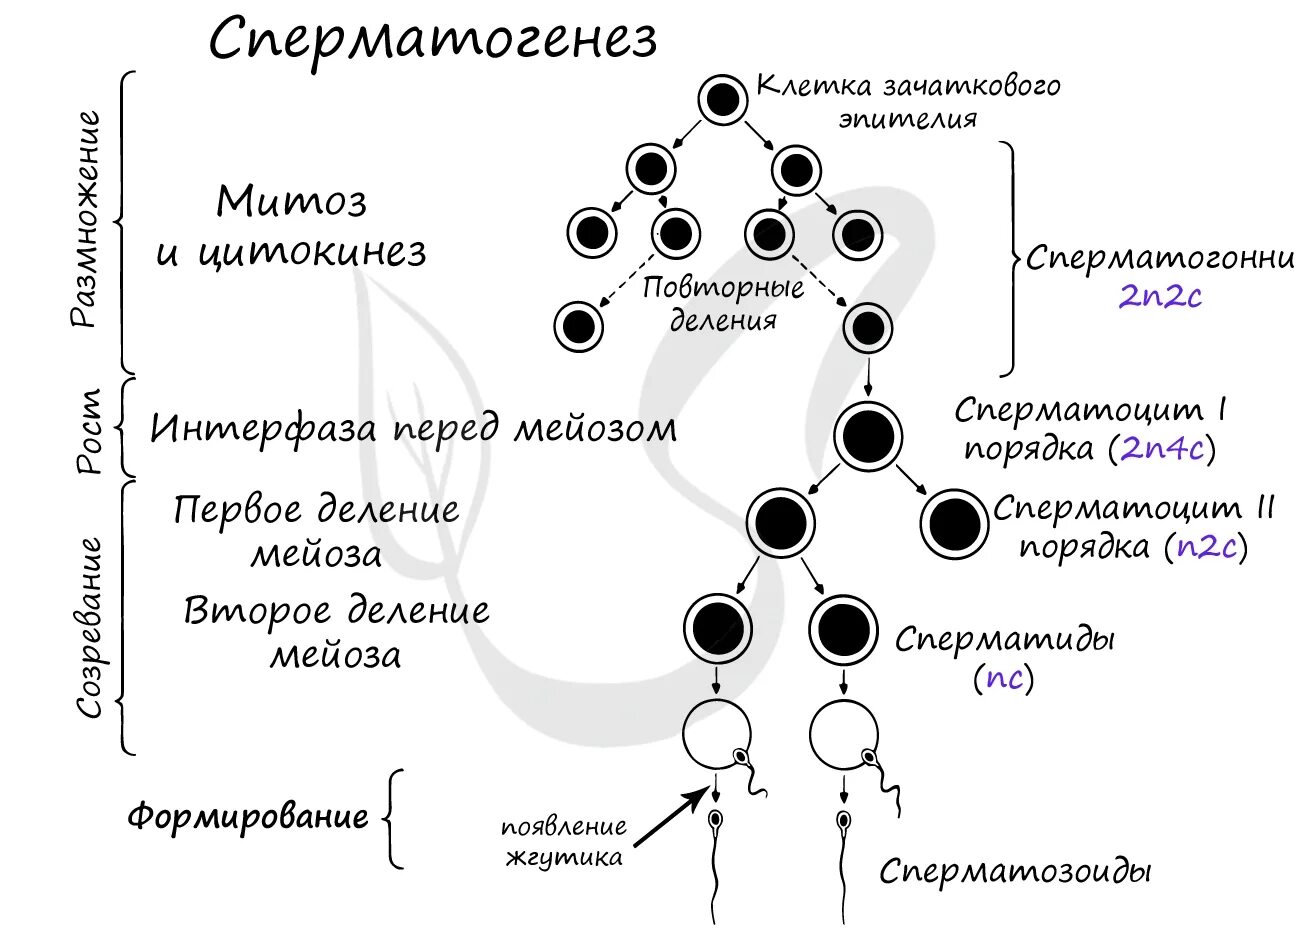 Описание сперматогенеза. 2. Гаметогенез. Сперматогенез. Фаза созревания сперматогенеза. Фаза размножения сперматогенеза. Схема процесса сперматогенеза.